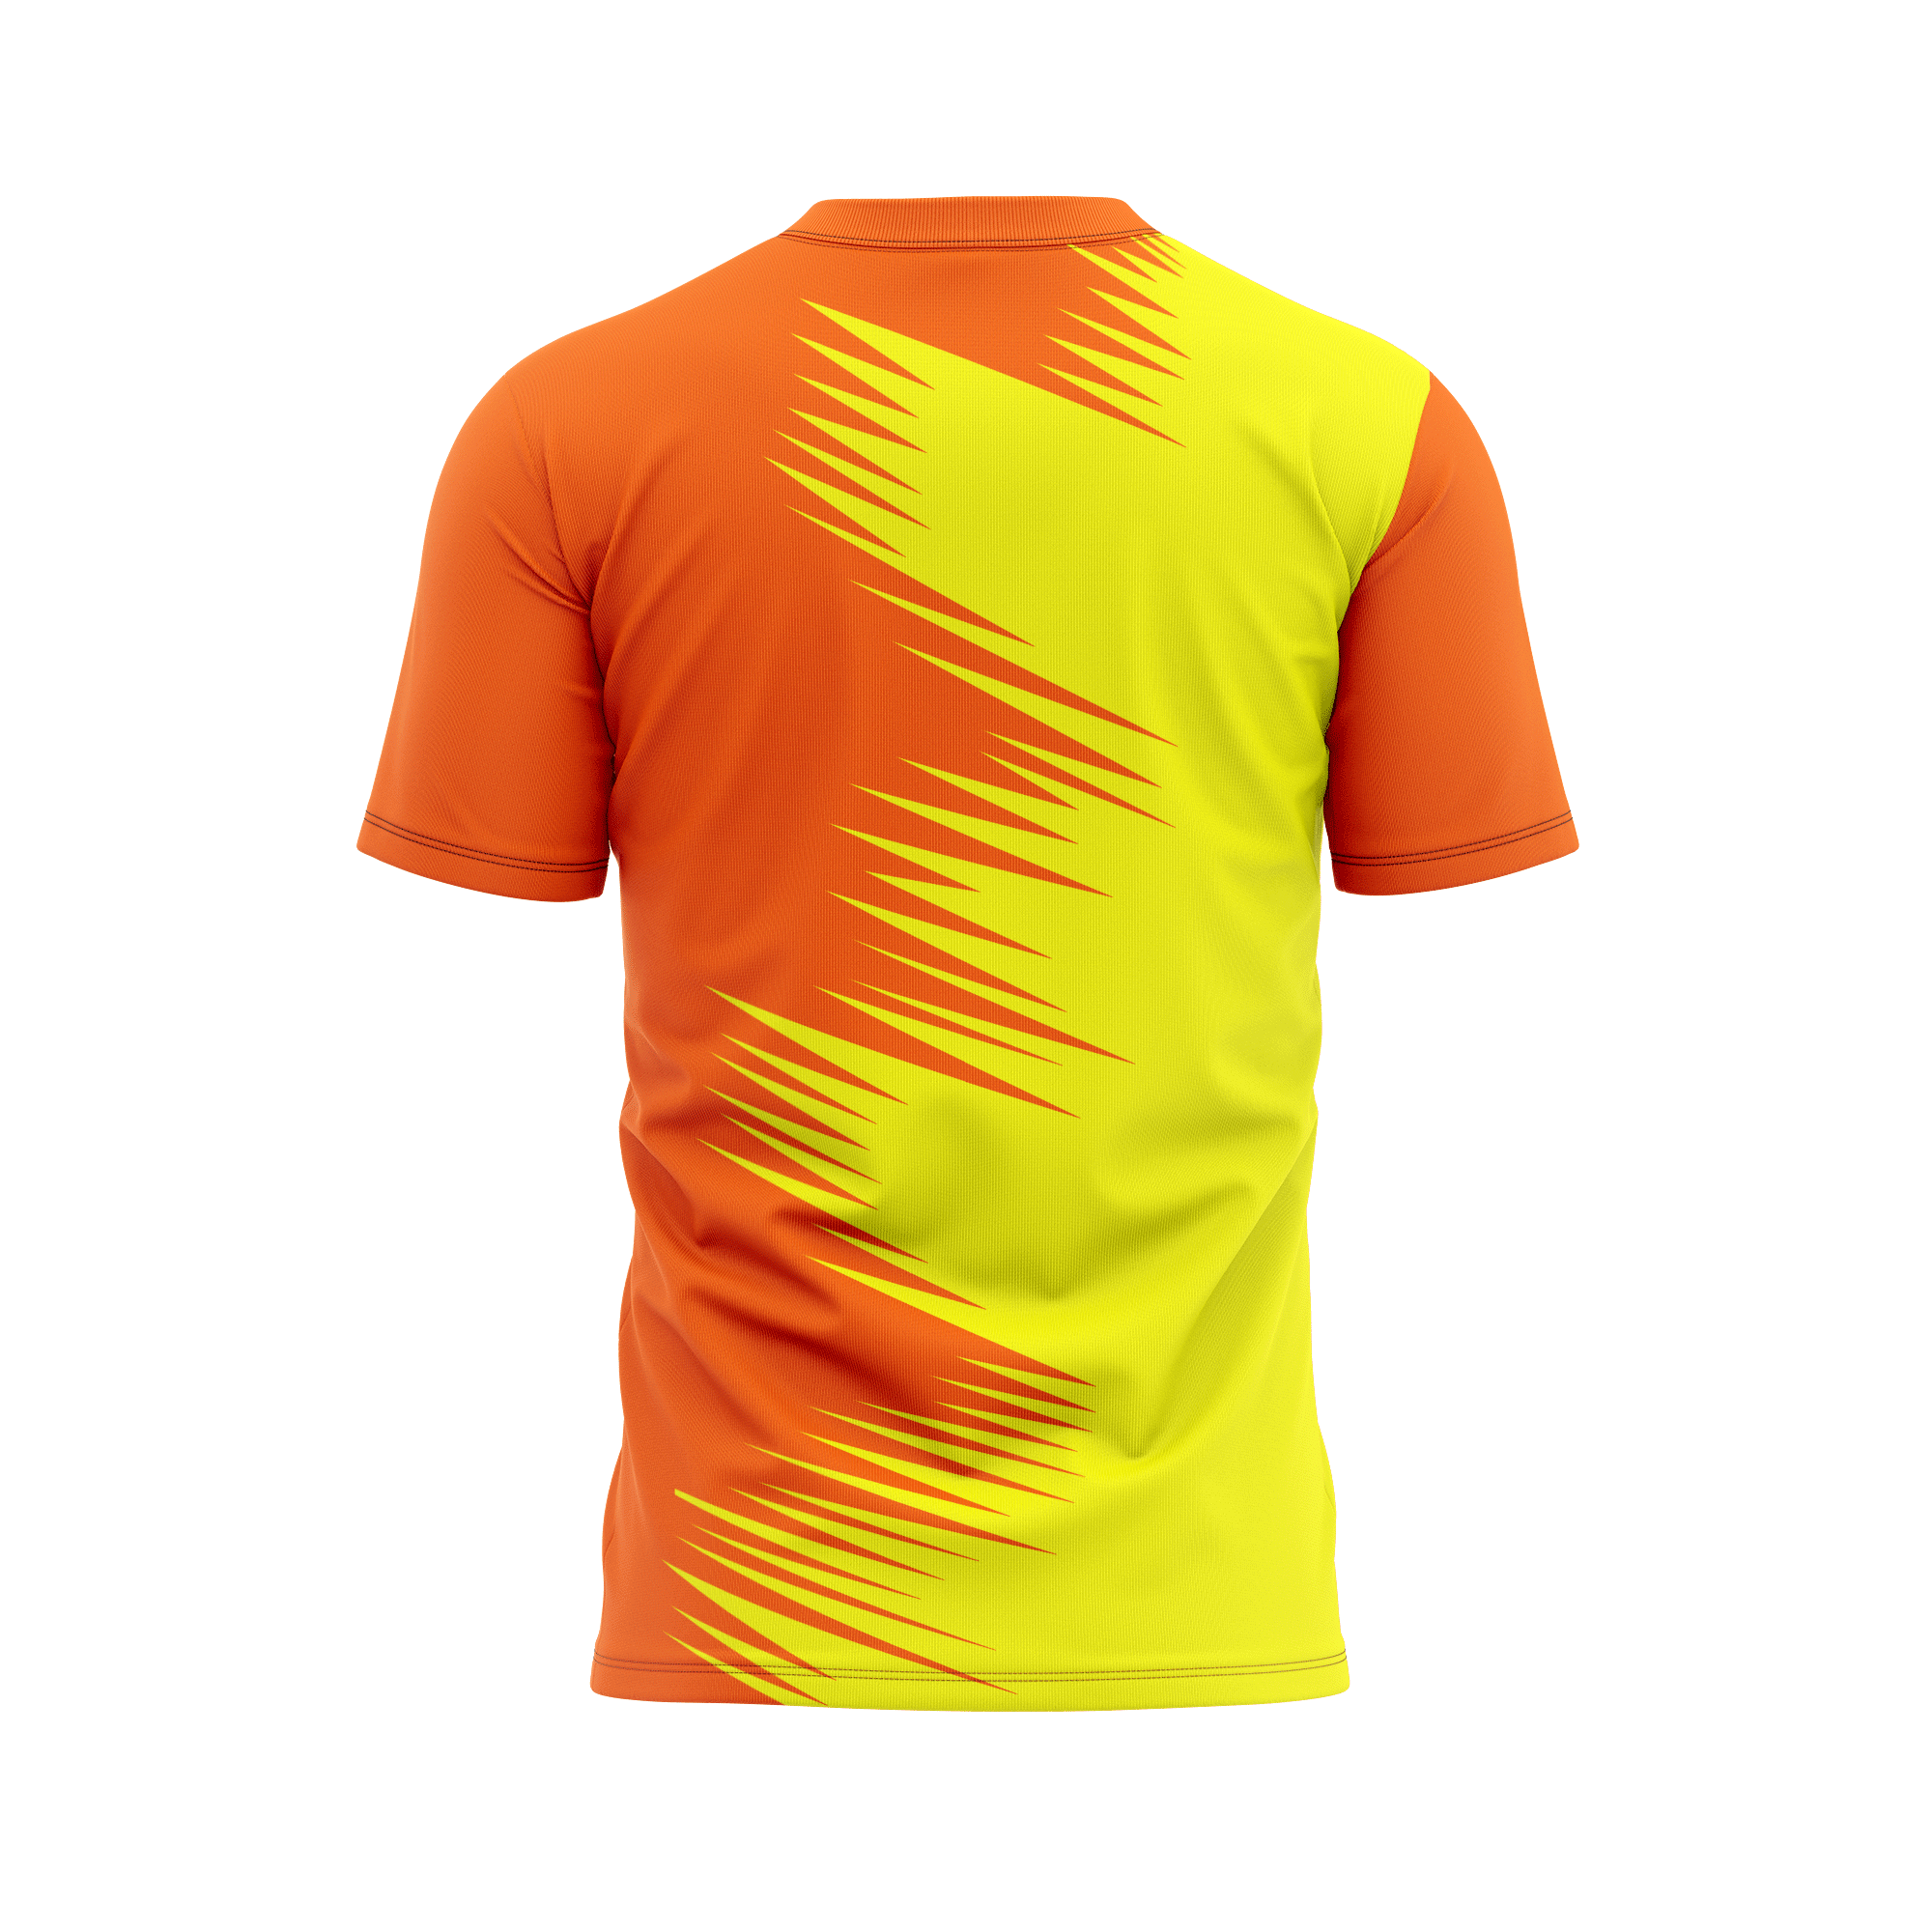 Rezista Customized Jersey - Sub Design-Orange-11 | Customized T-shirts ...